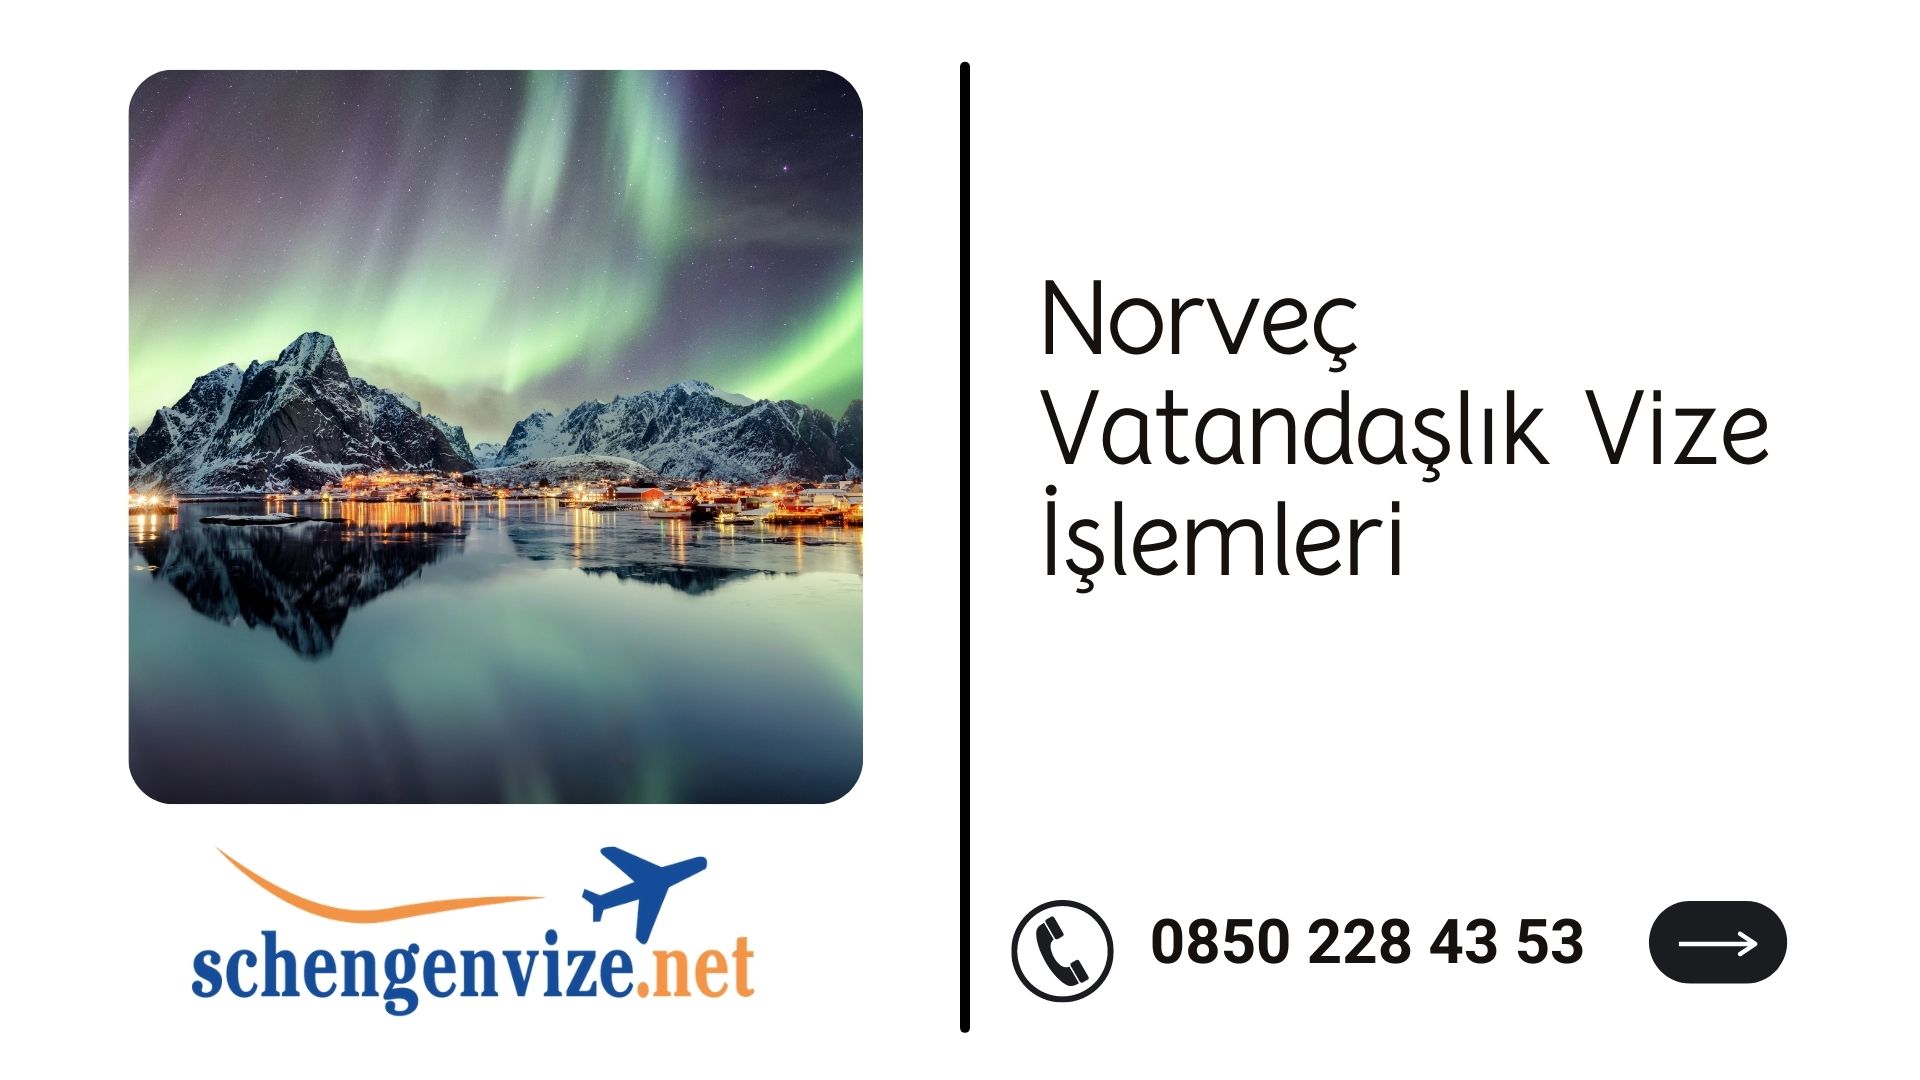 Norveç Vatandaşlık Vize İşlemleri